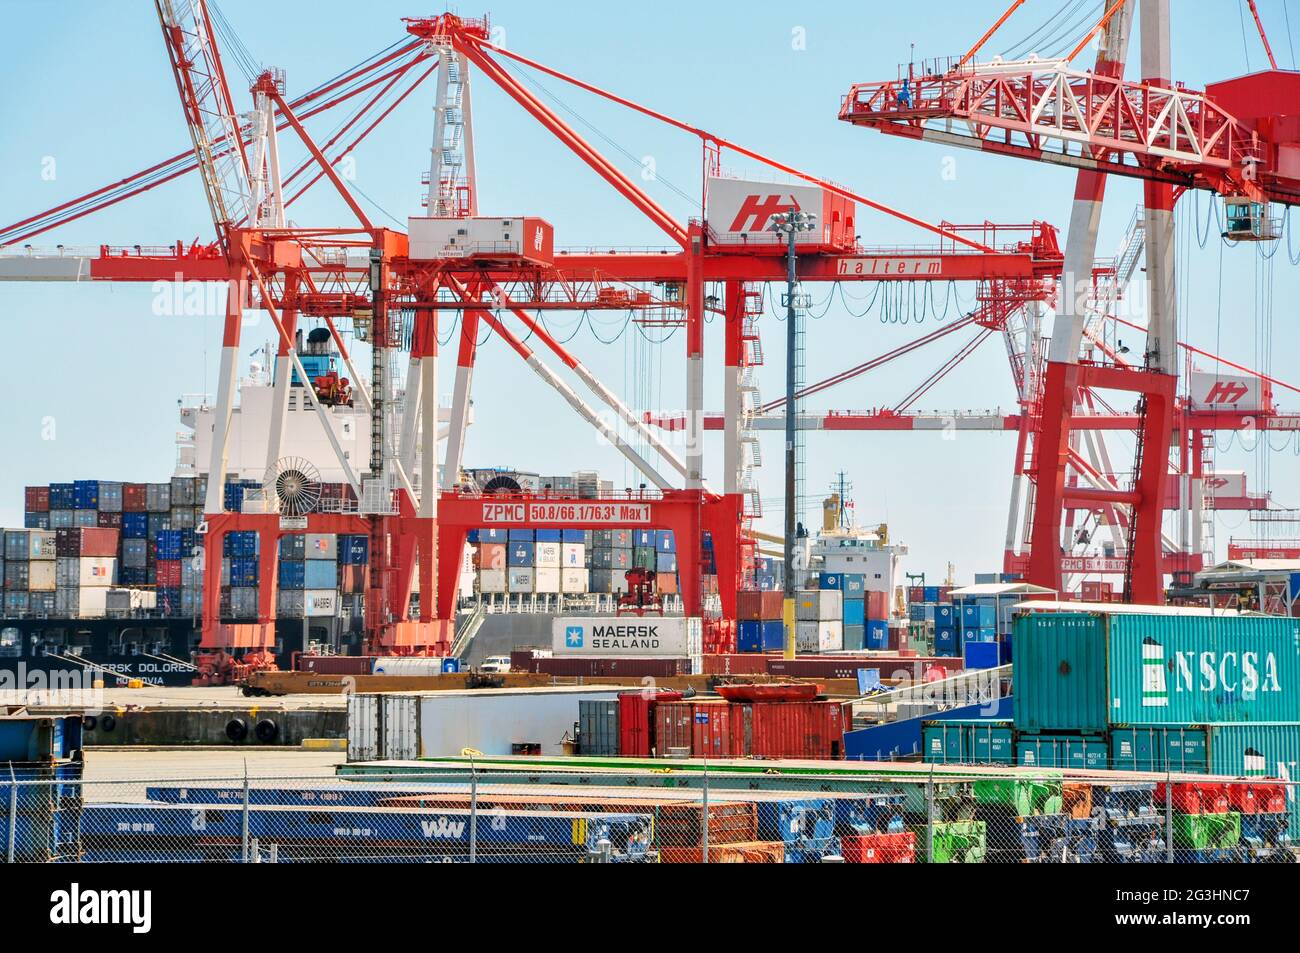 Hell, farbenfroh und extrem geschäftig, hat der Hafen von Halifax einen endlosen Strom von Containern, die aus der ganzen Welt ein- und ausfahren. Stockfoto